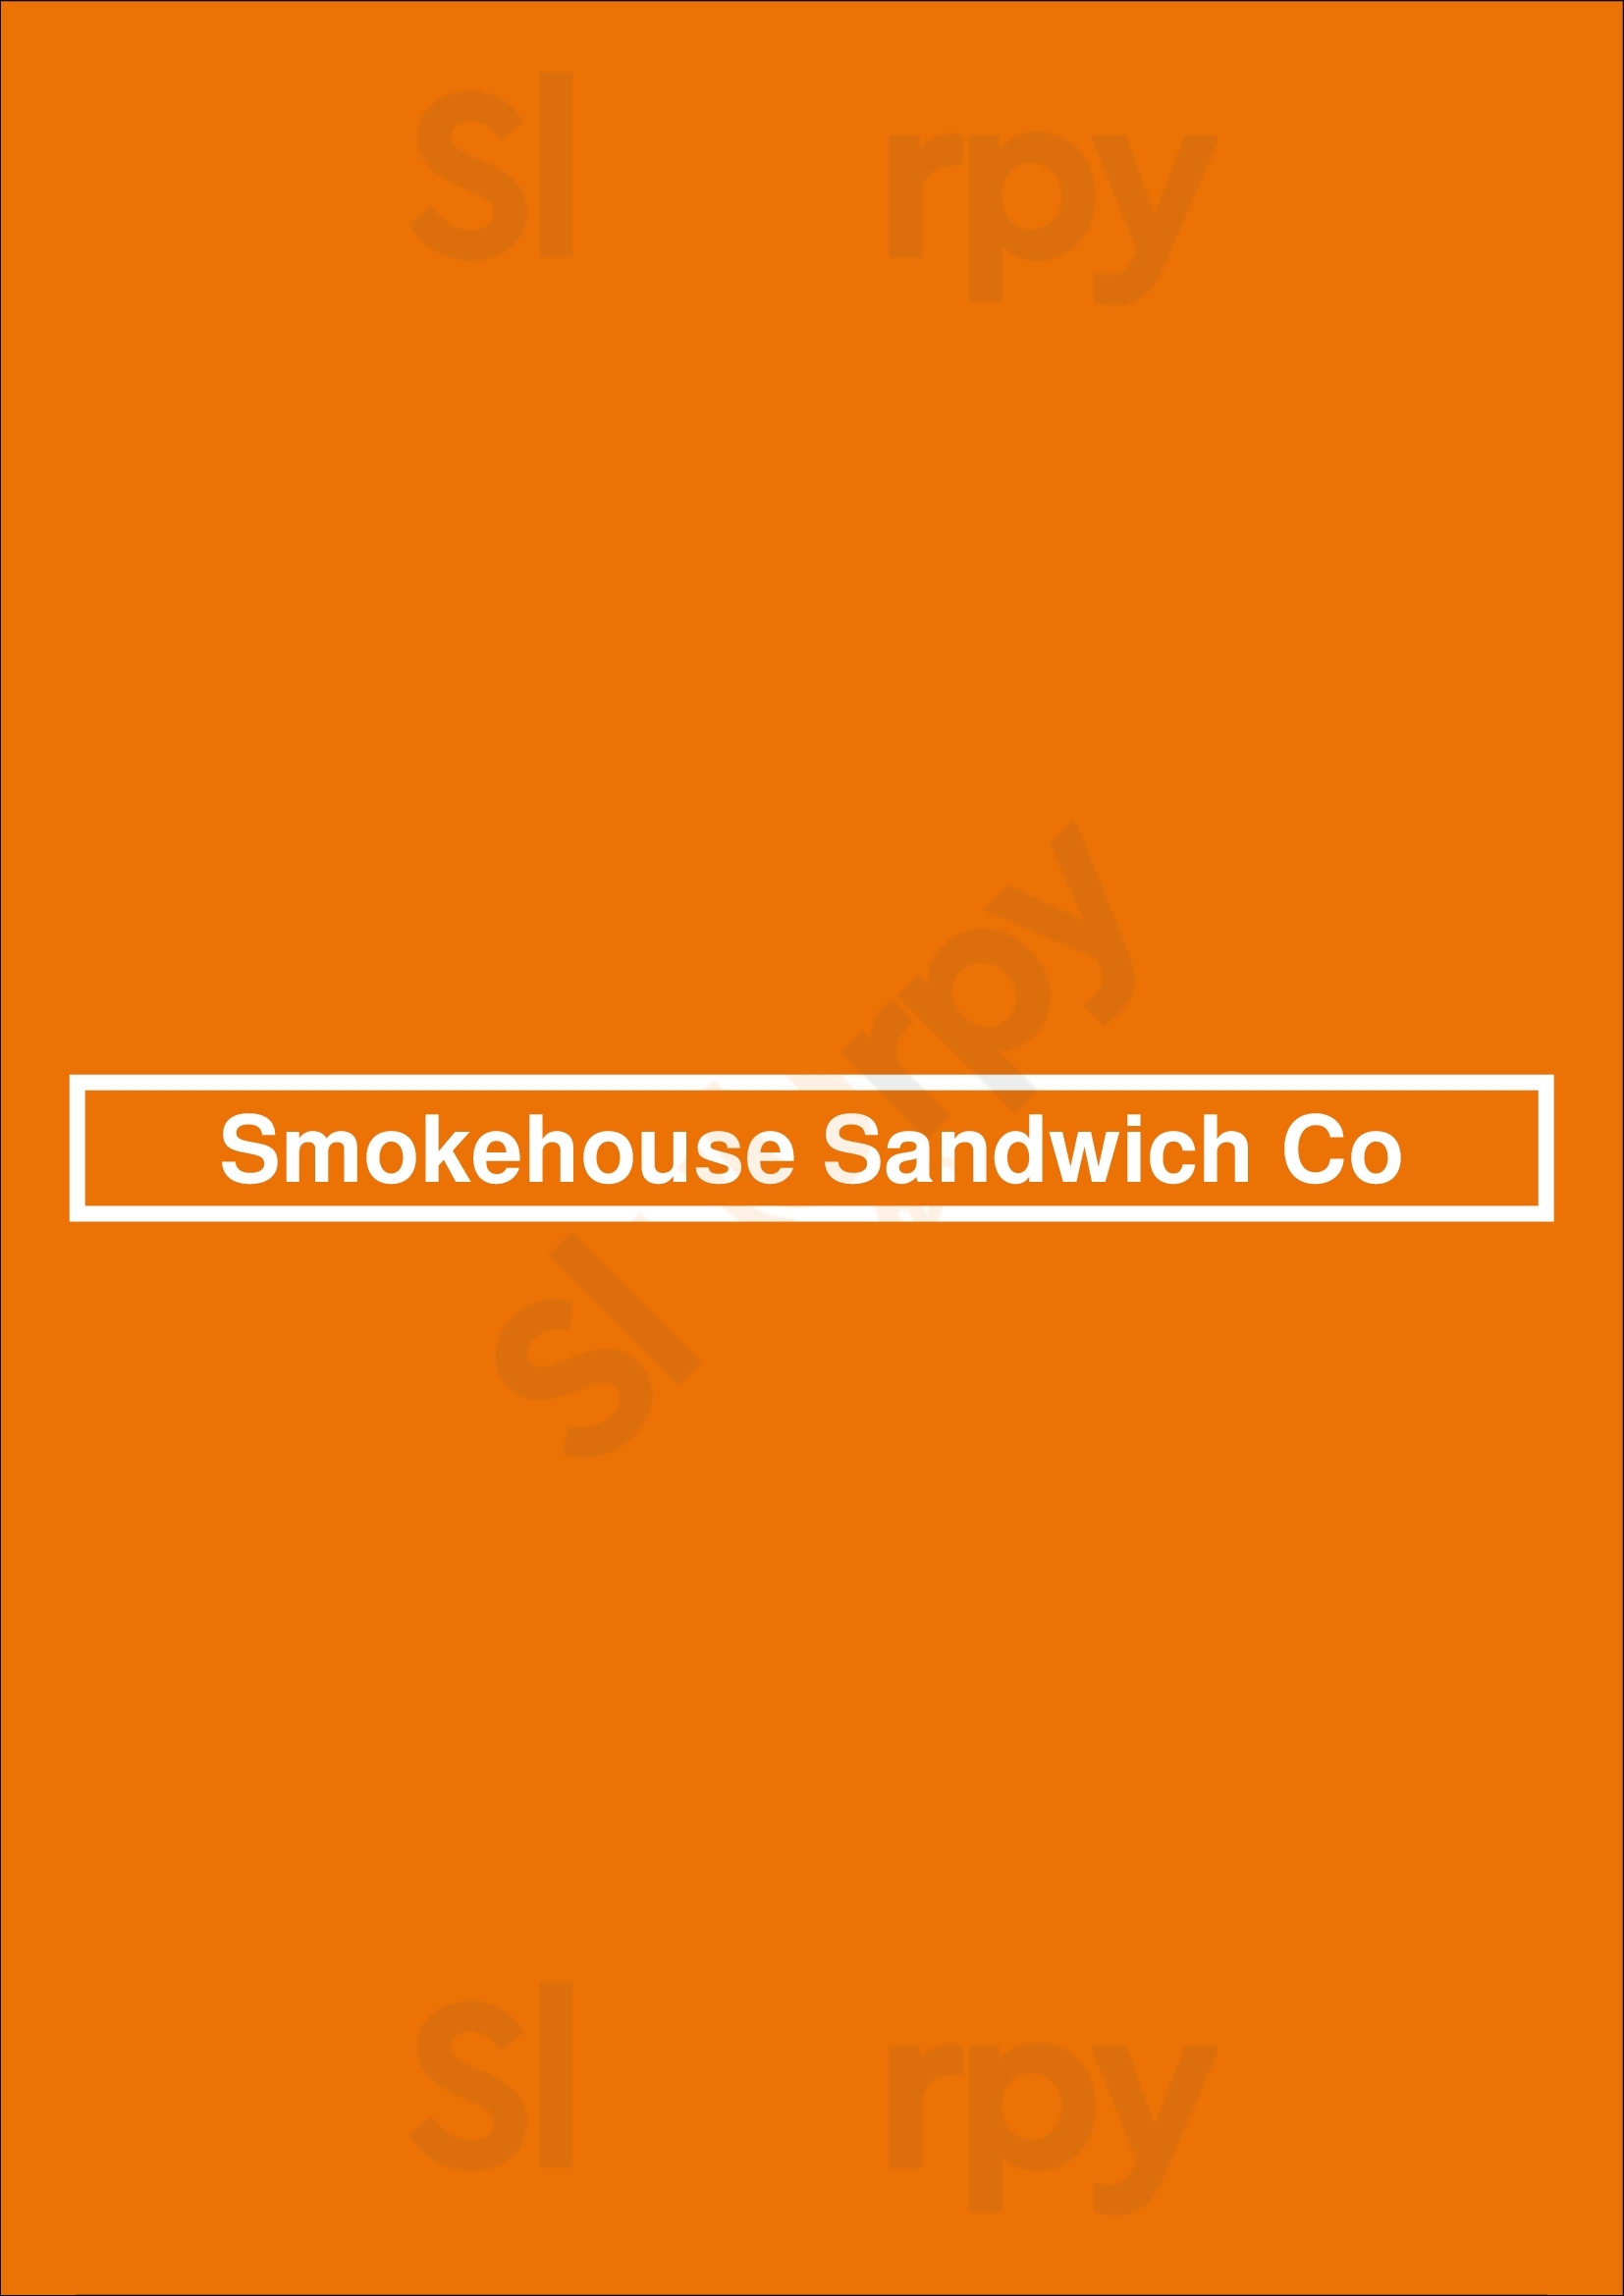 Smokehouse Sandwich Co Richmond Menu - 1